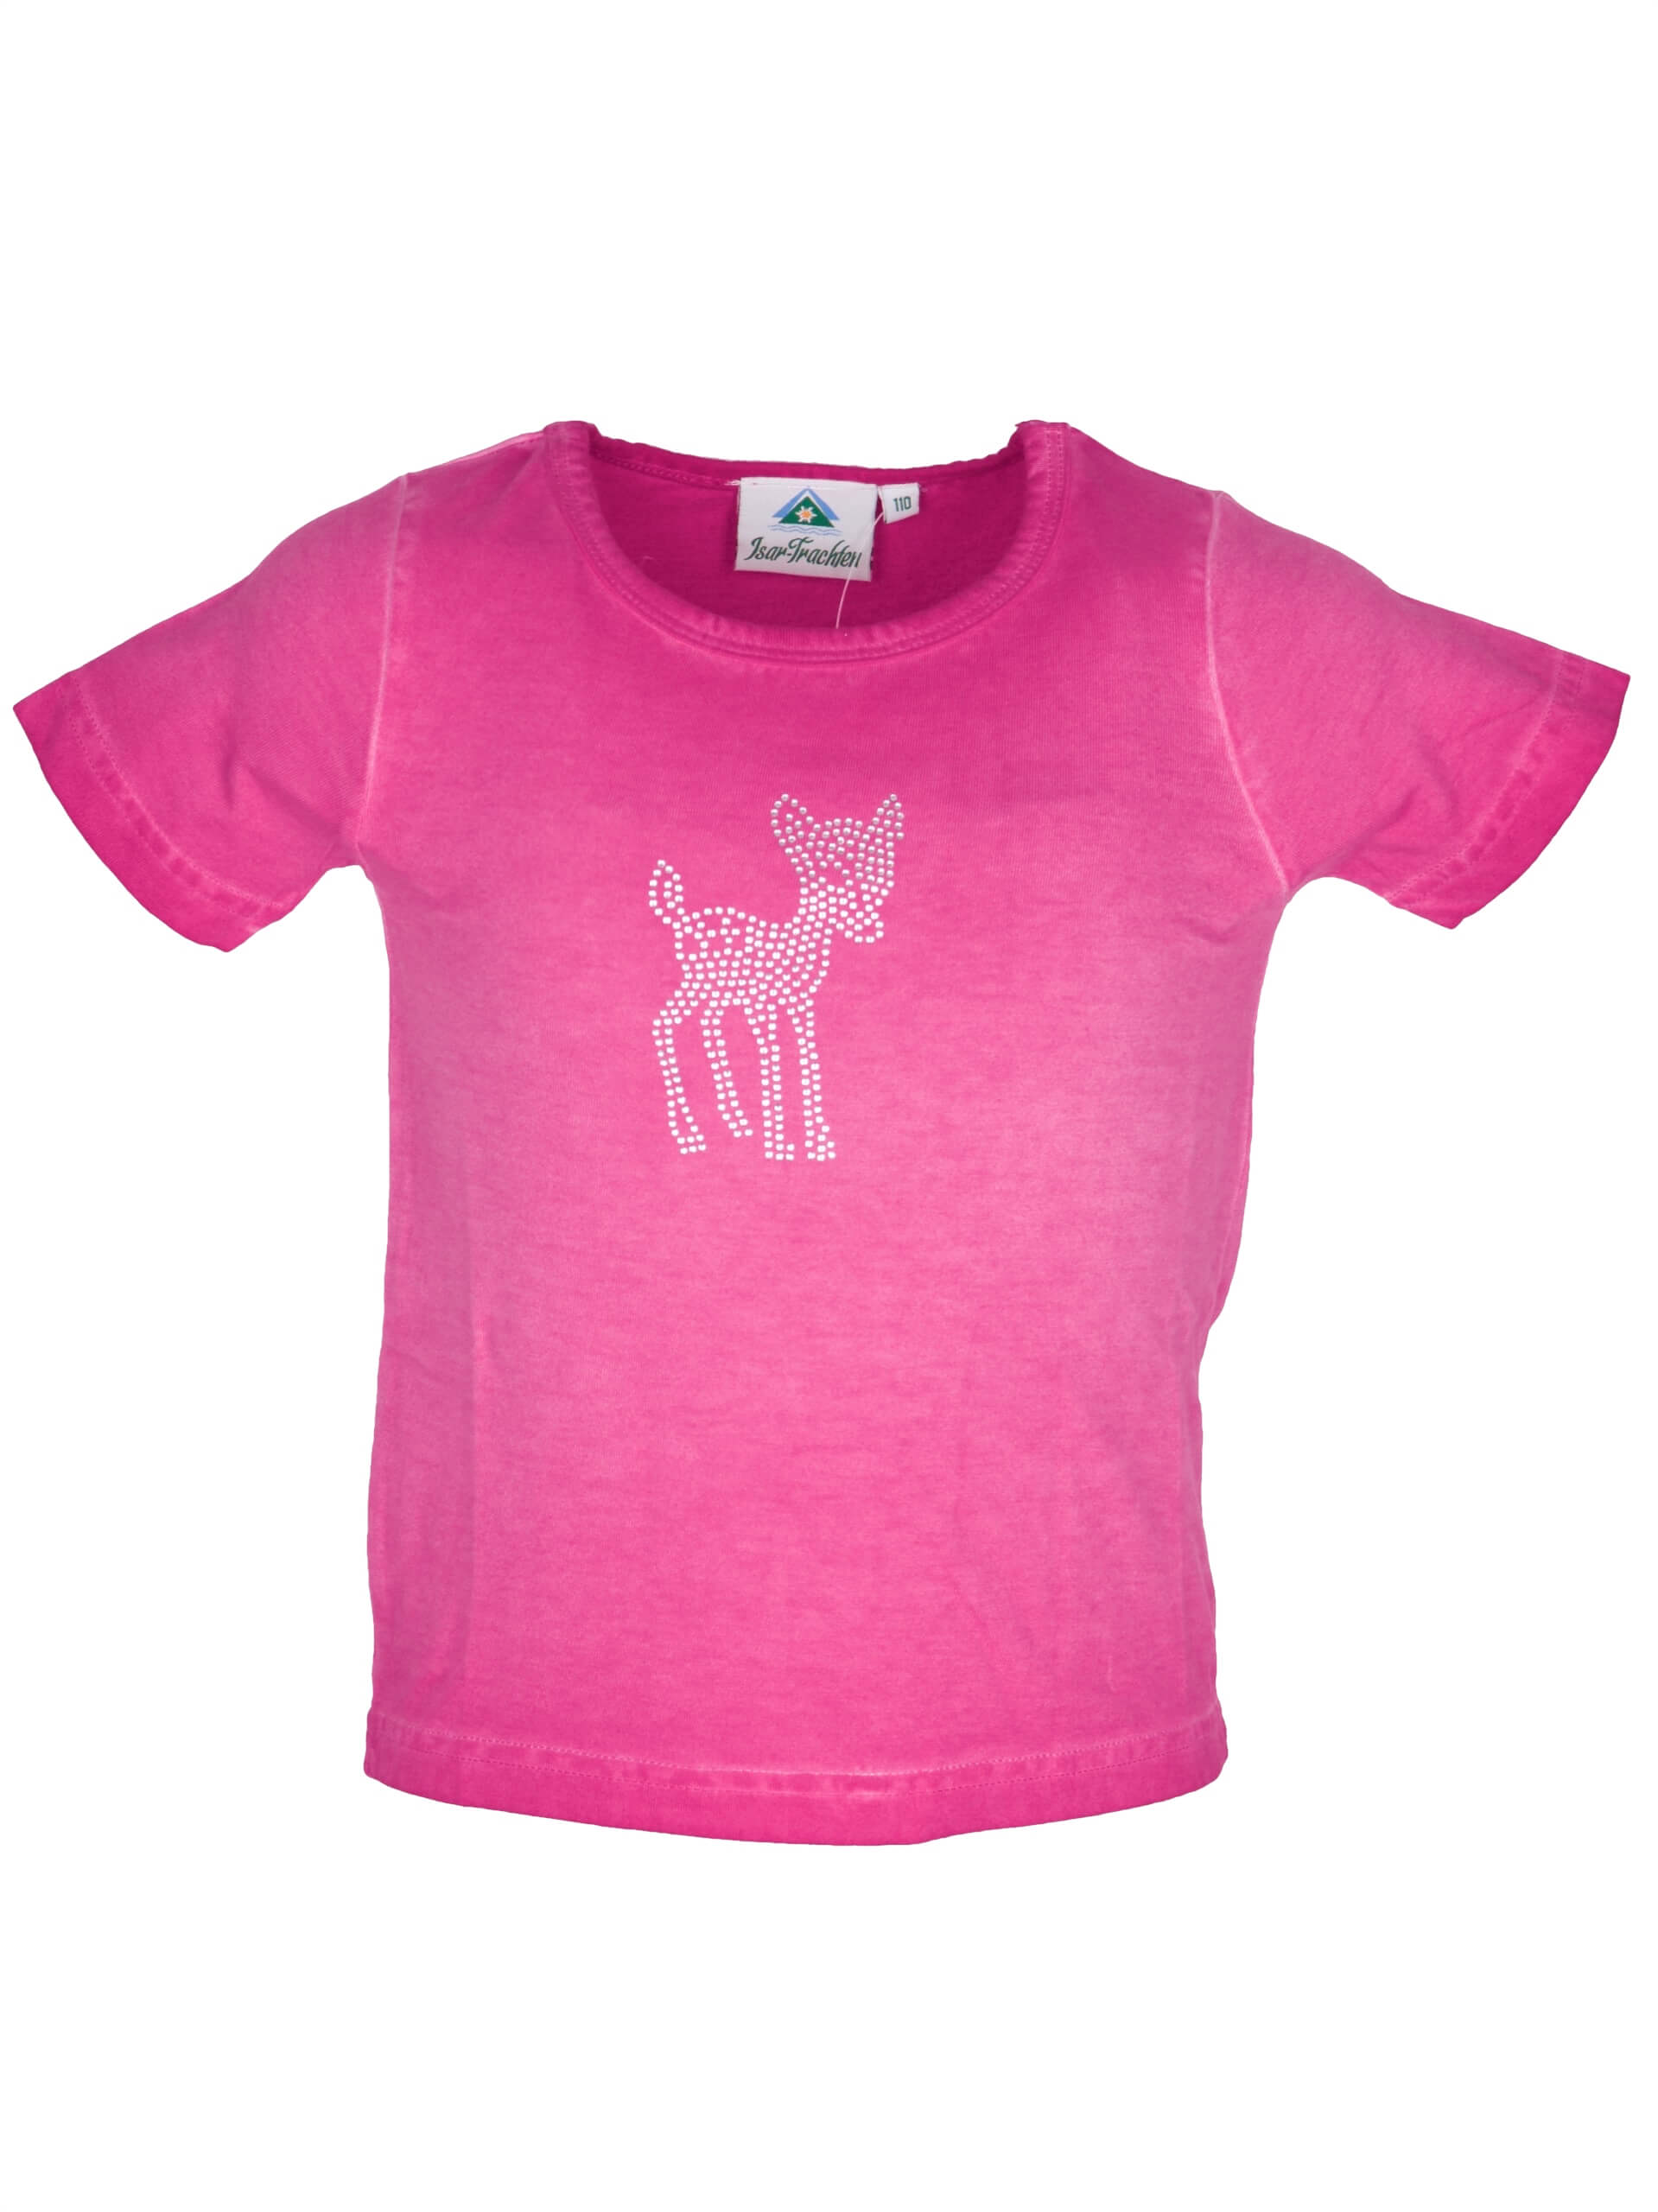 Isar Trachten Mädchen T-Shirt 52979 Gr 86 Pink Bambi